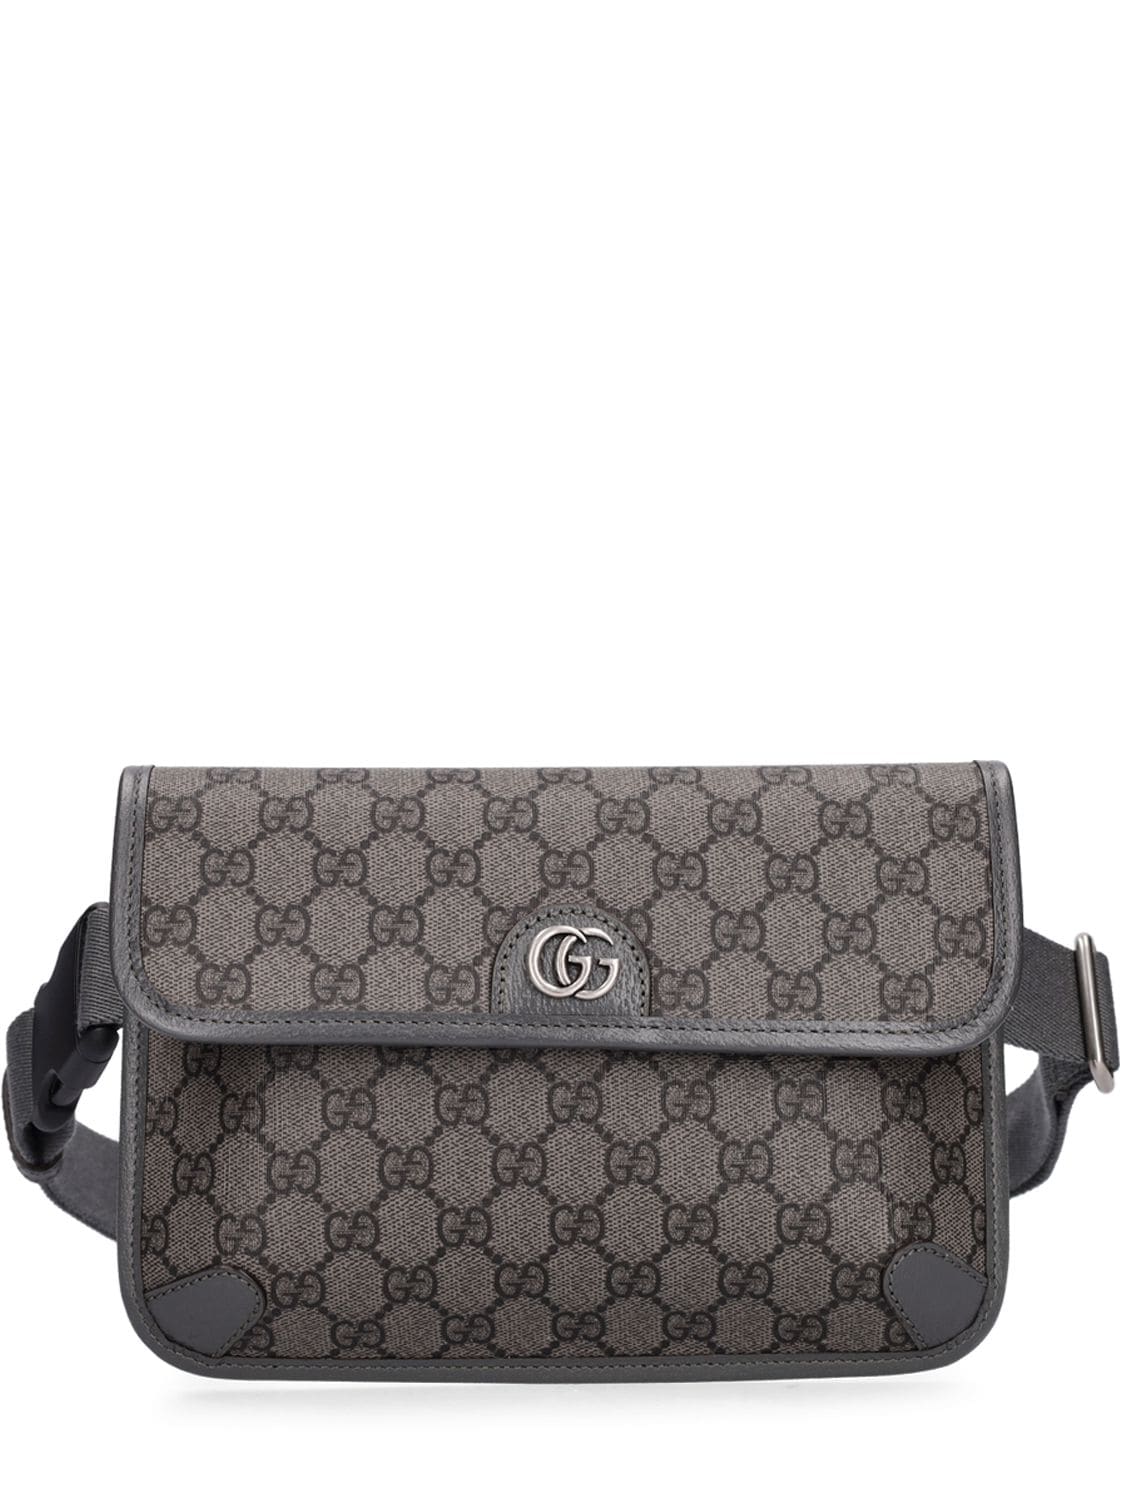 Gucci Gg Supreme Belt Bag In Grey,black